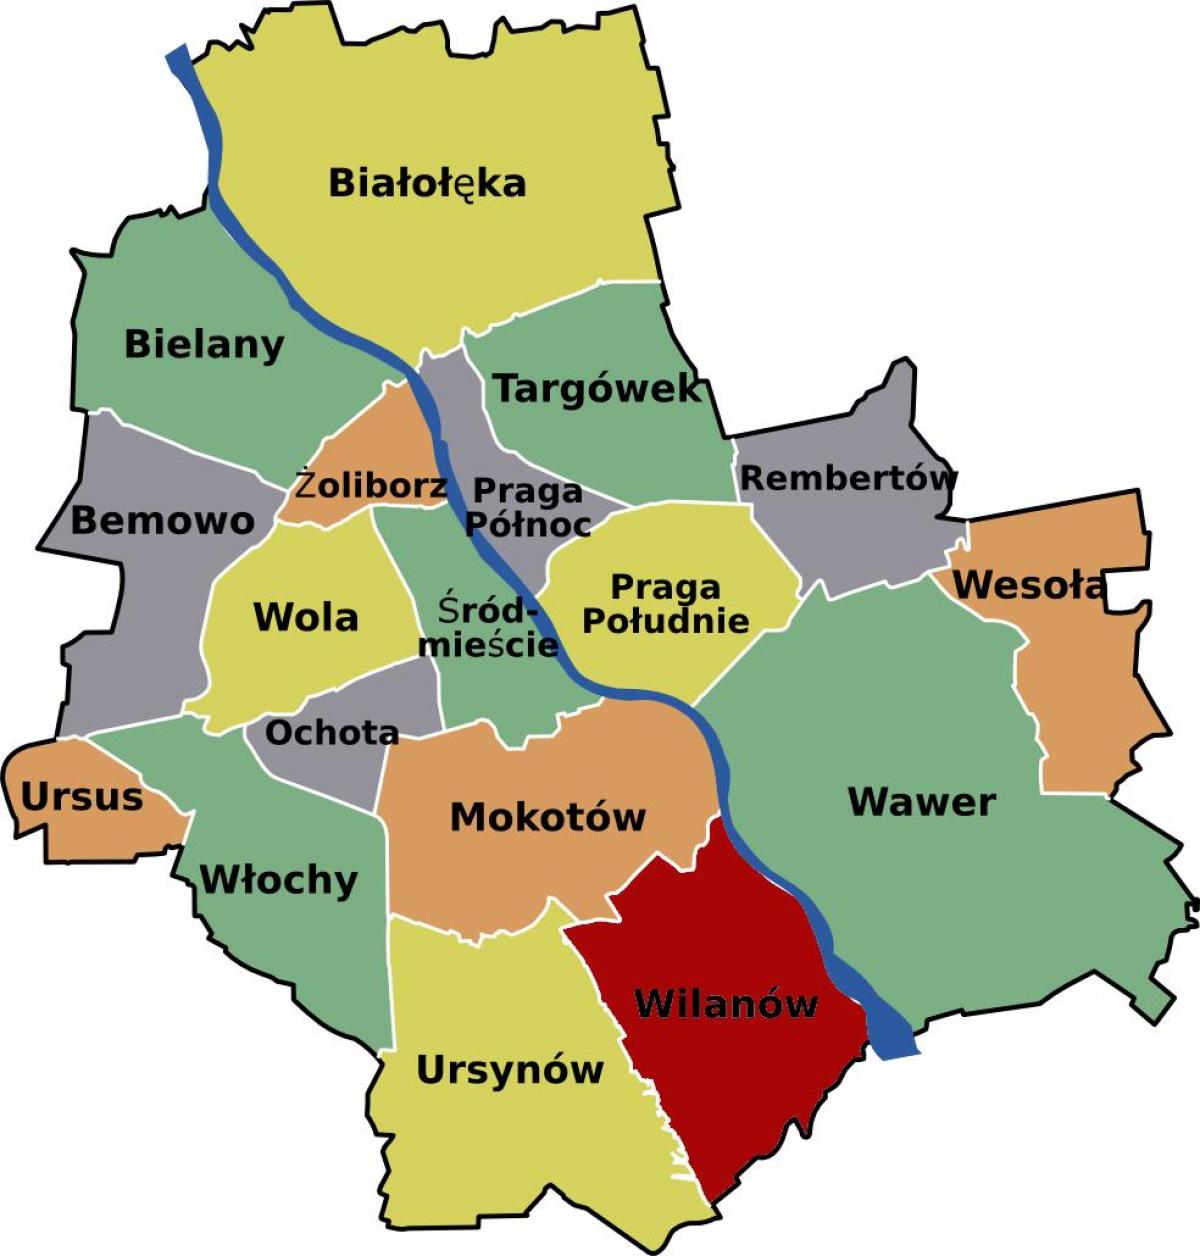 地図のワルシャワの街 